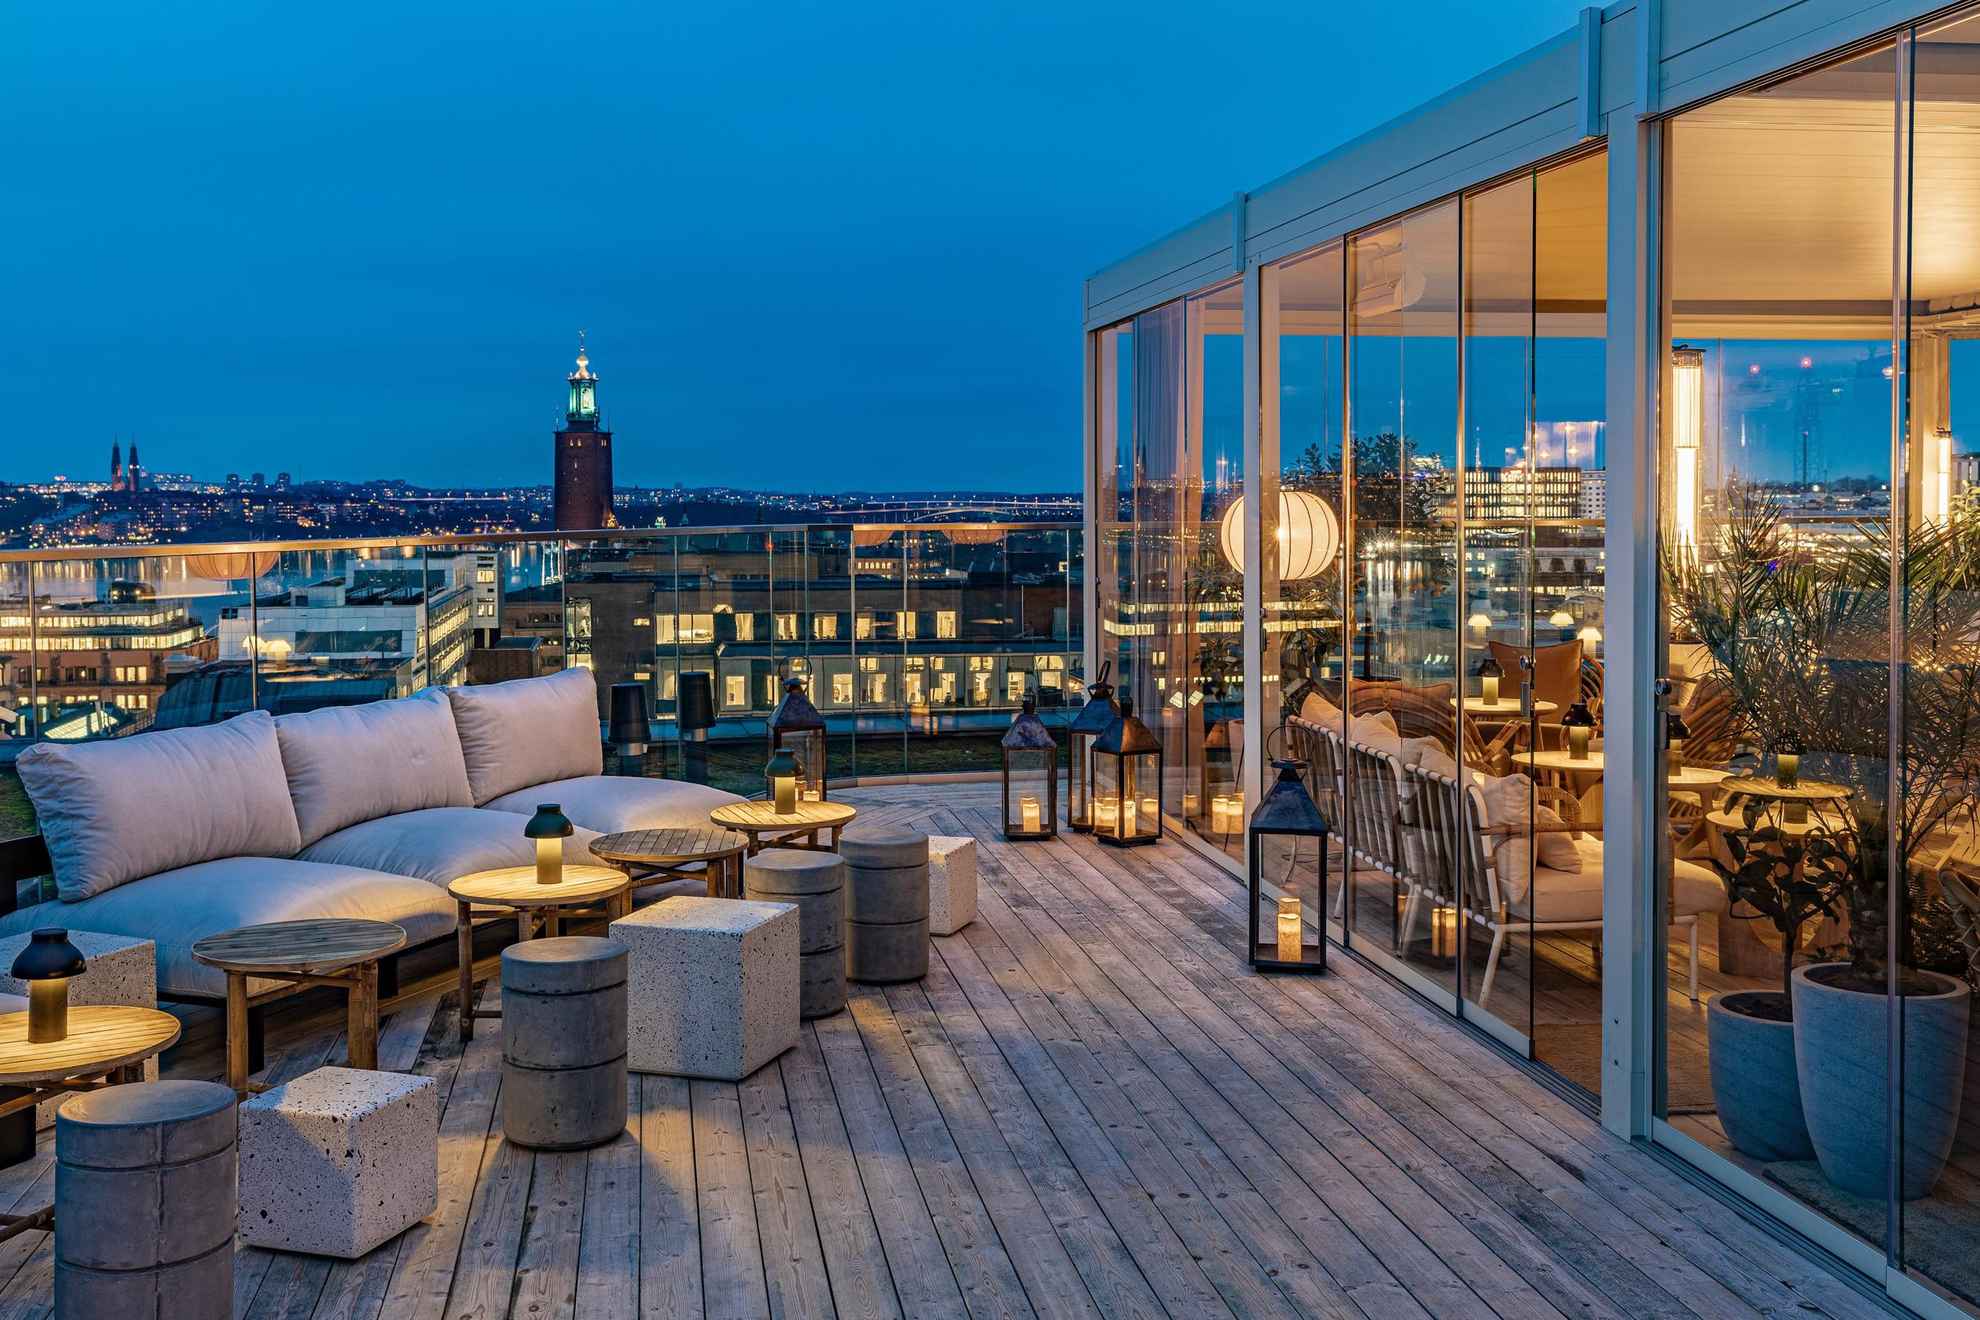 Un bar élégant sur un toit-terrasse avec vue sur Stockholm et l'hôtel de ville. La partie de la terrasse située sur la droite de la photo se trouve derrière un mur de verre.